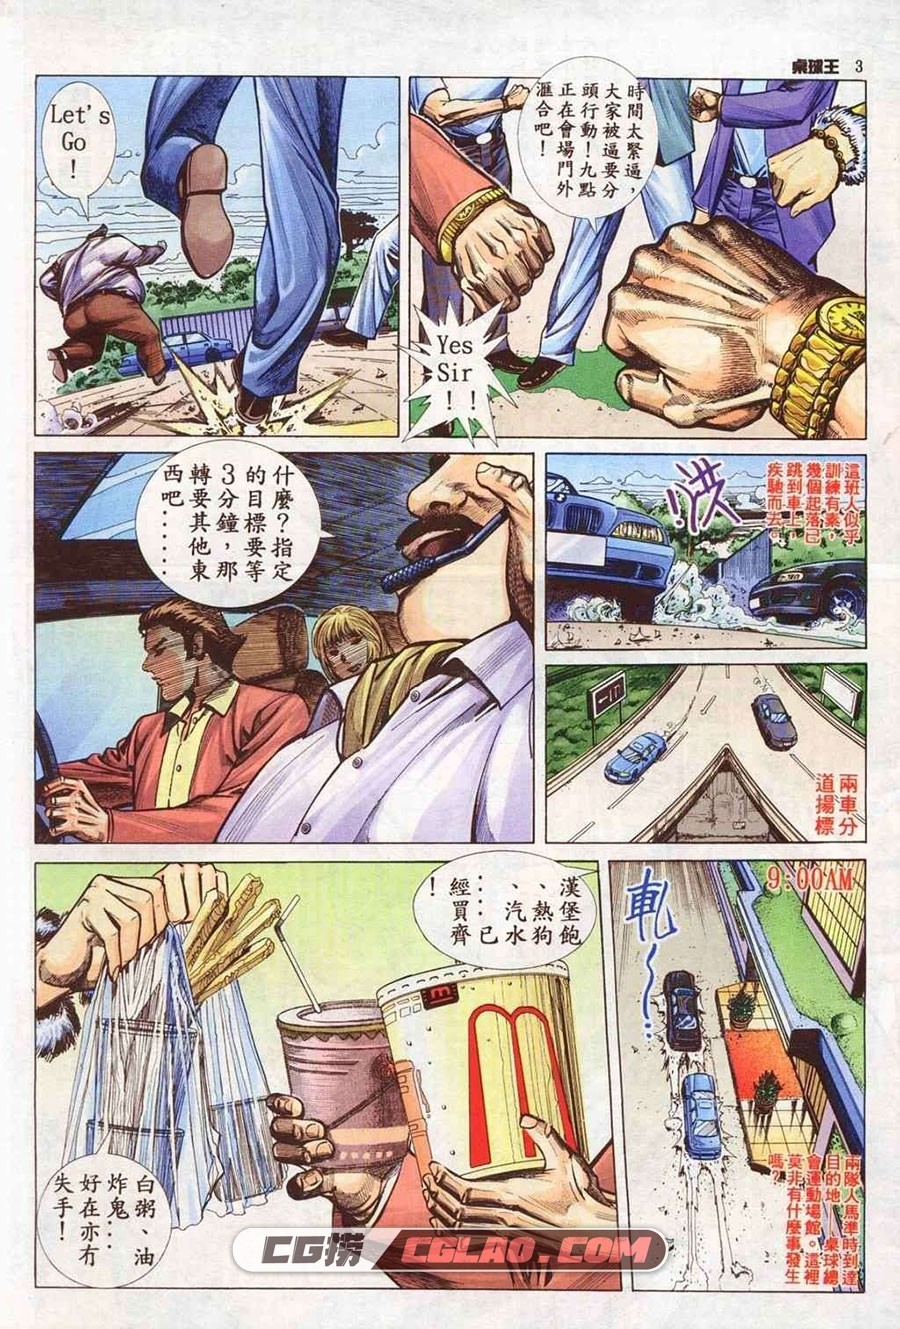 桌球王第三部 上官小宝 1-12册 漫画全集下载 百度网盘,003.jpg